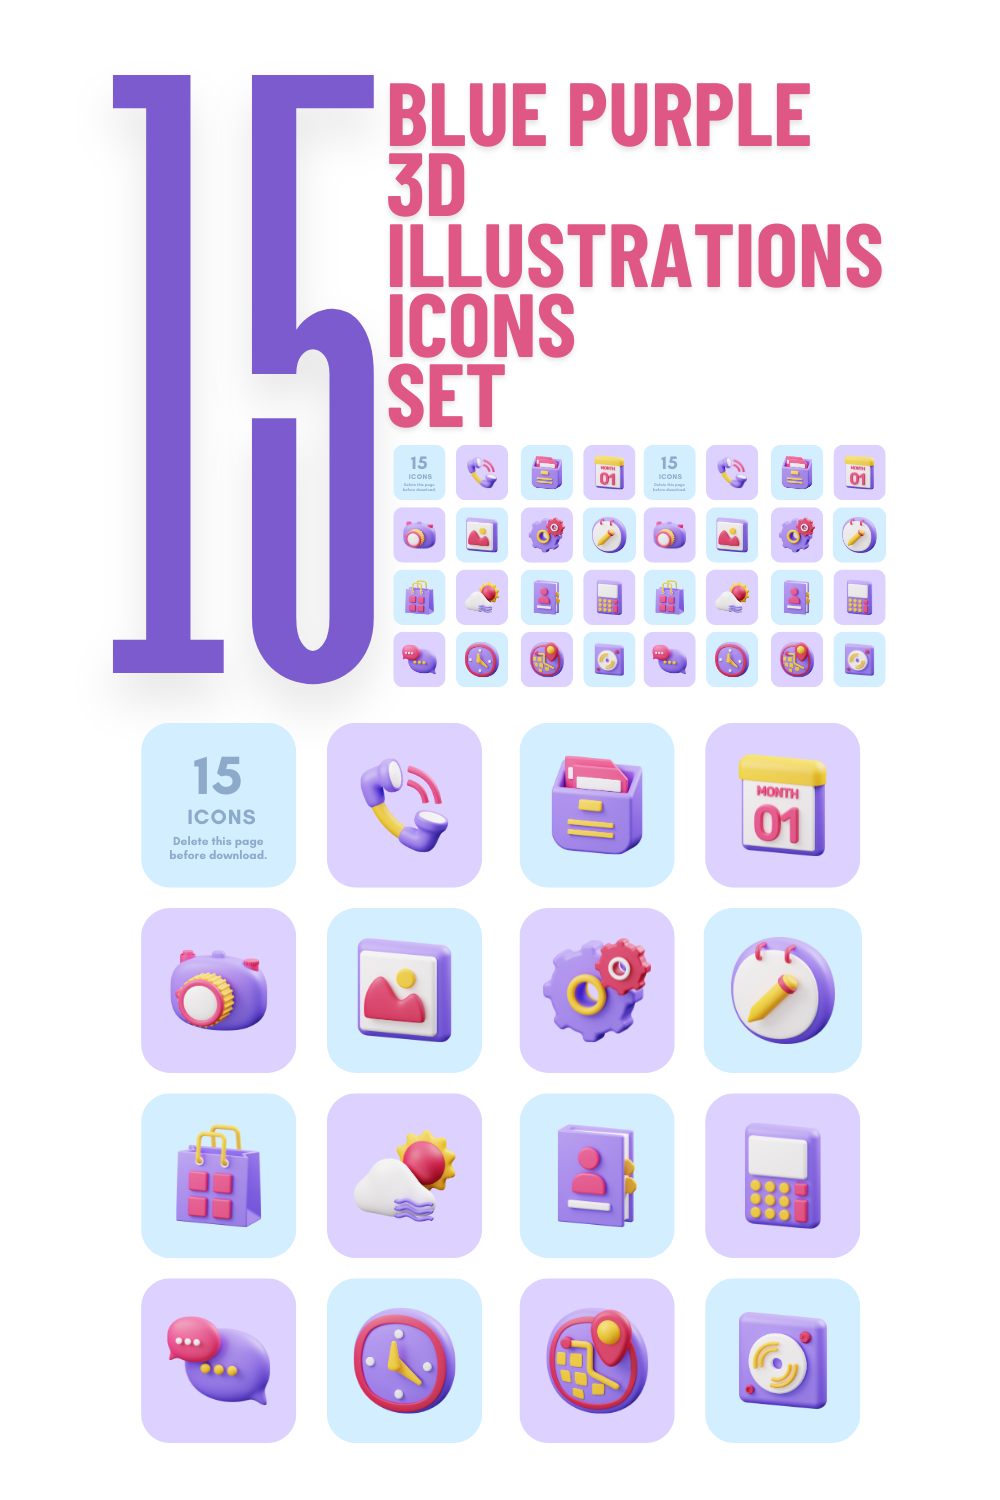 Blue Purple 3D Illustrations Icons Set pinterest preview image.